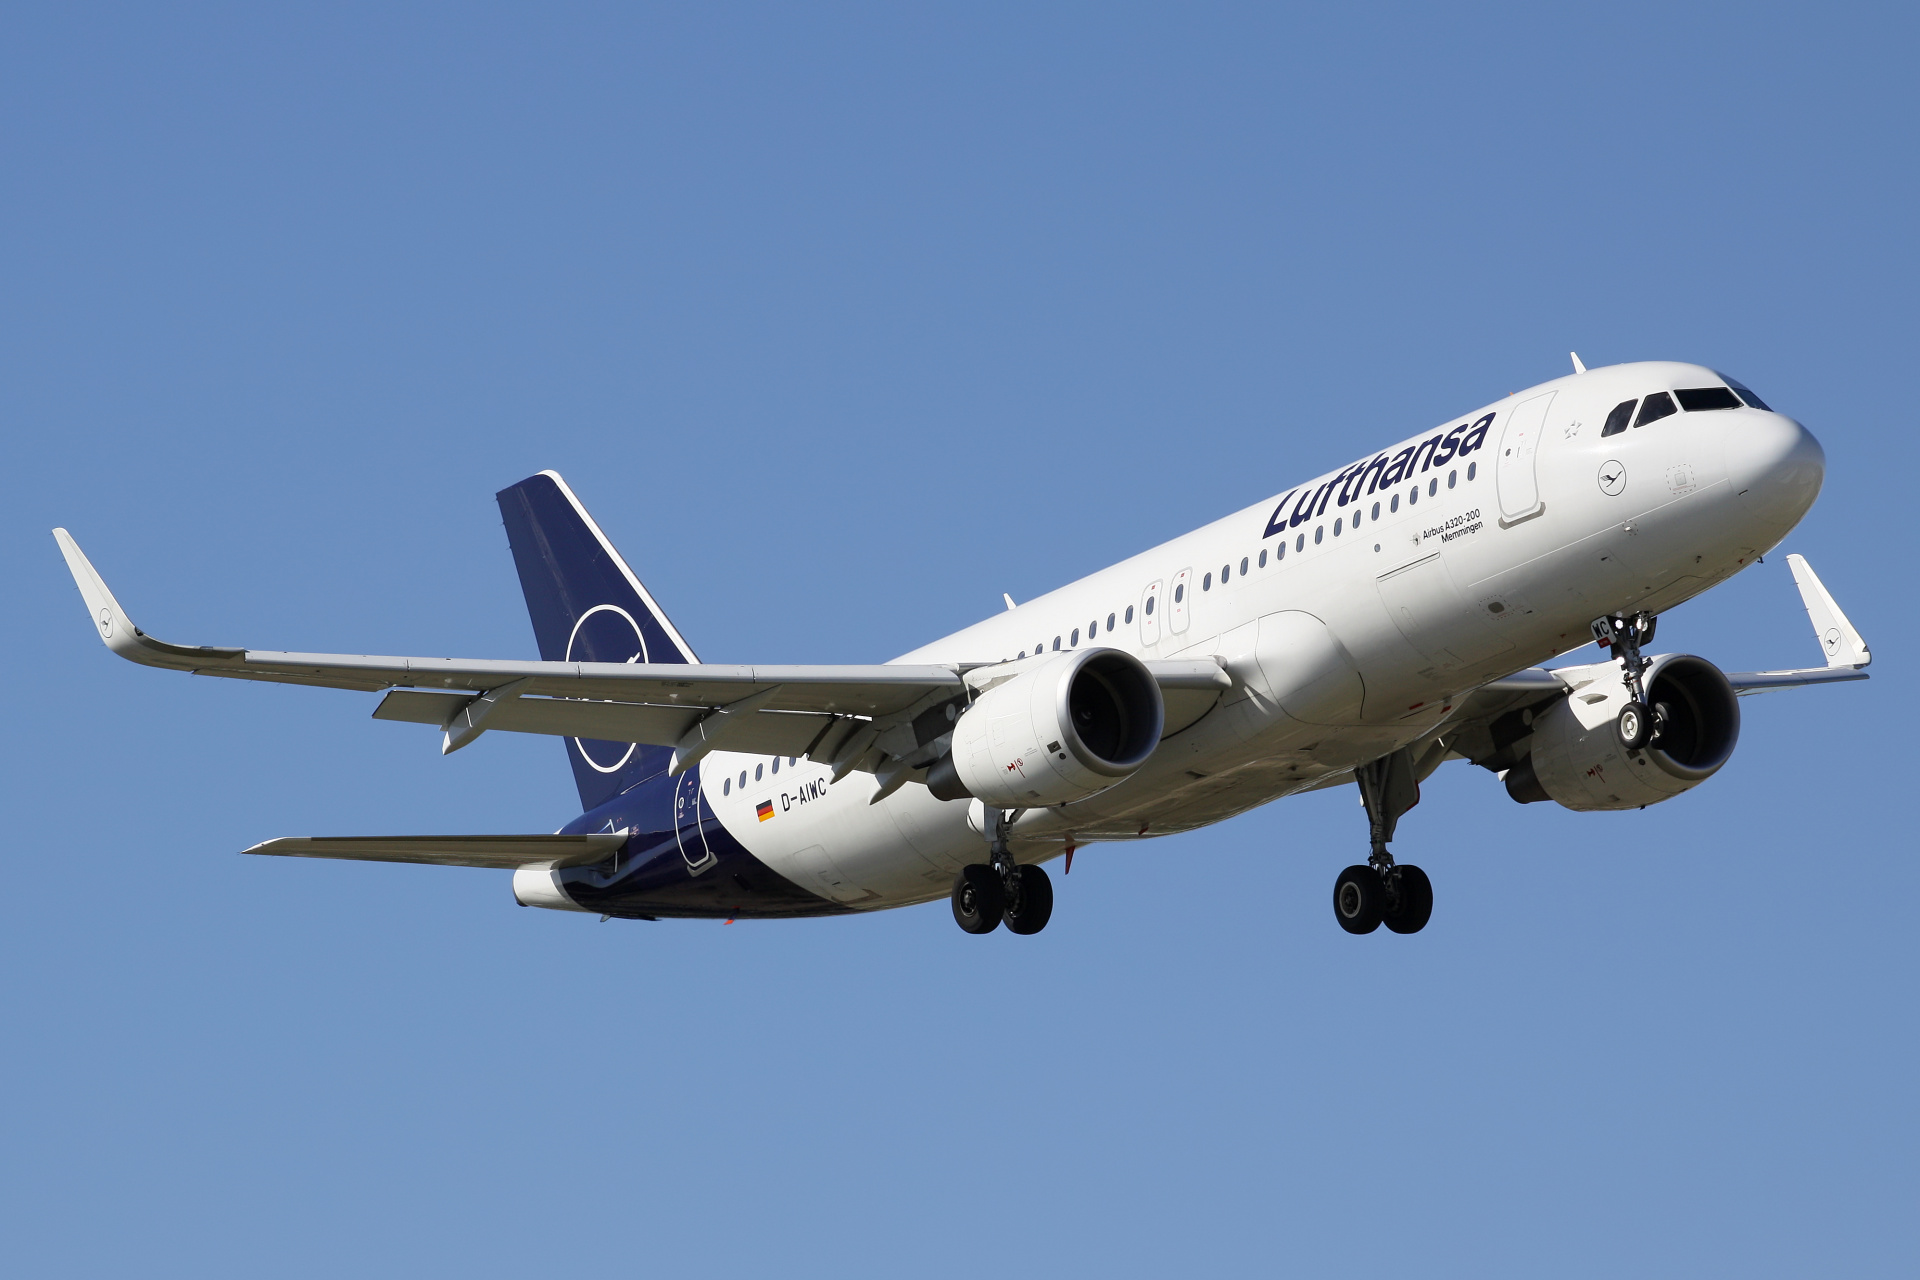 D-AIWC (Aircraft » EPWA Spotting » Airbus A320-200 » Lufthansa)